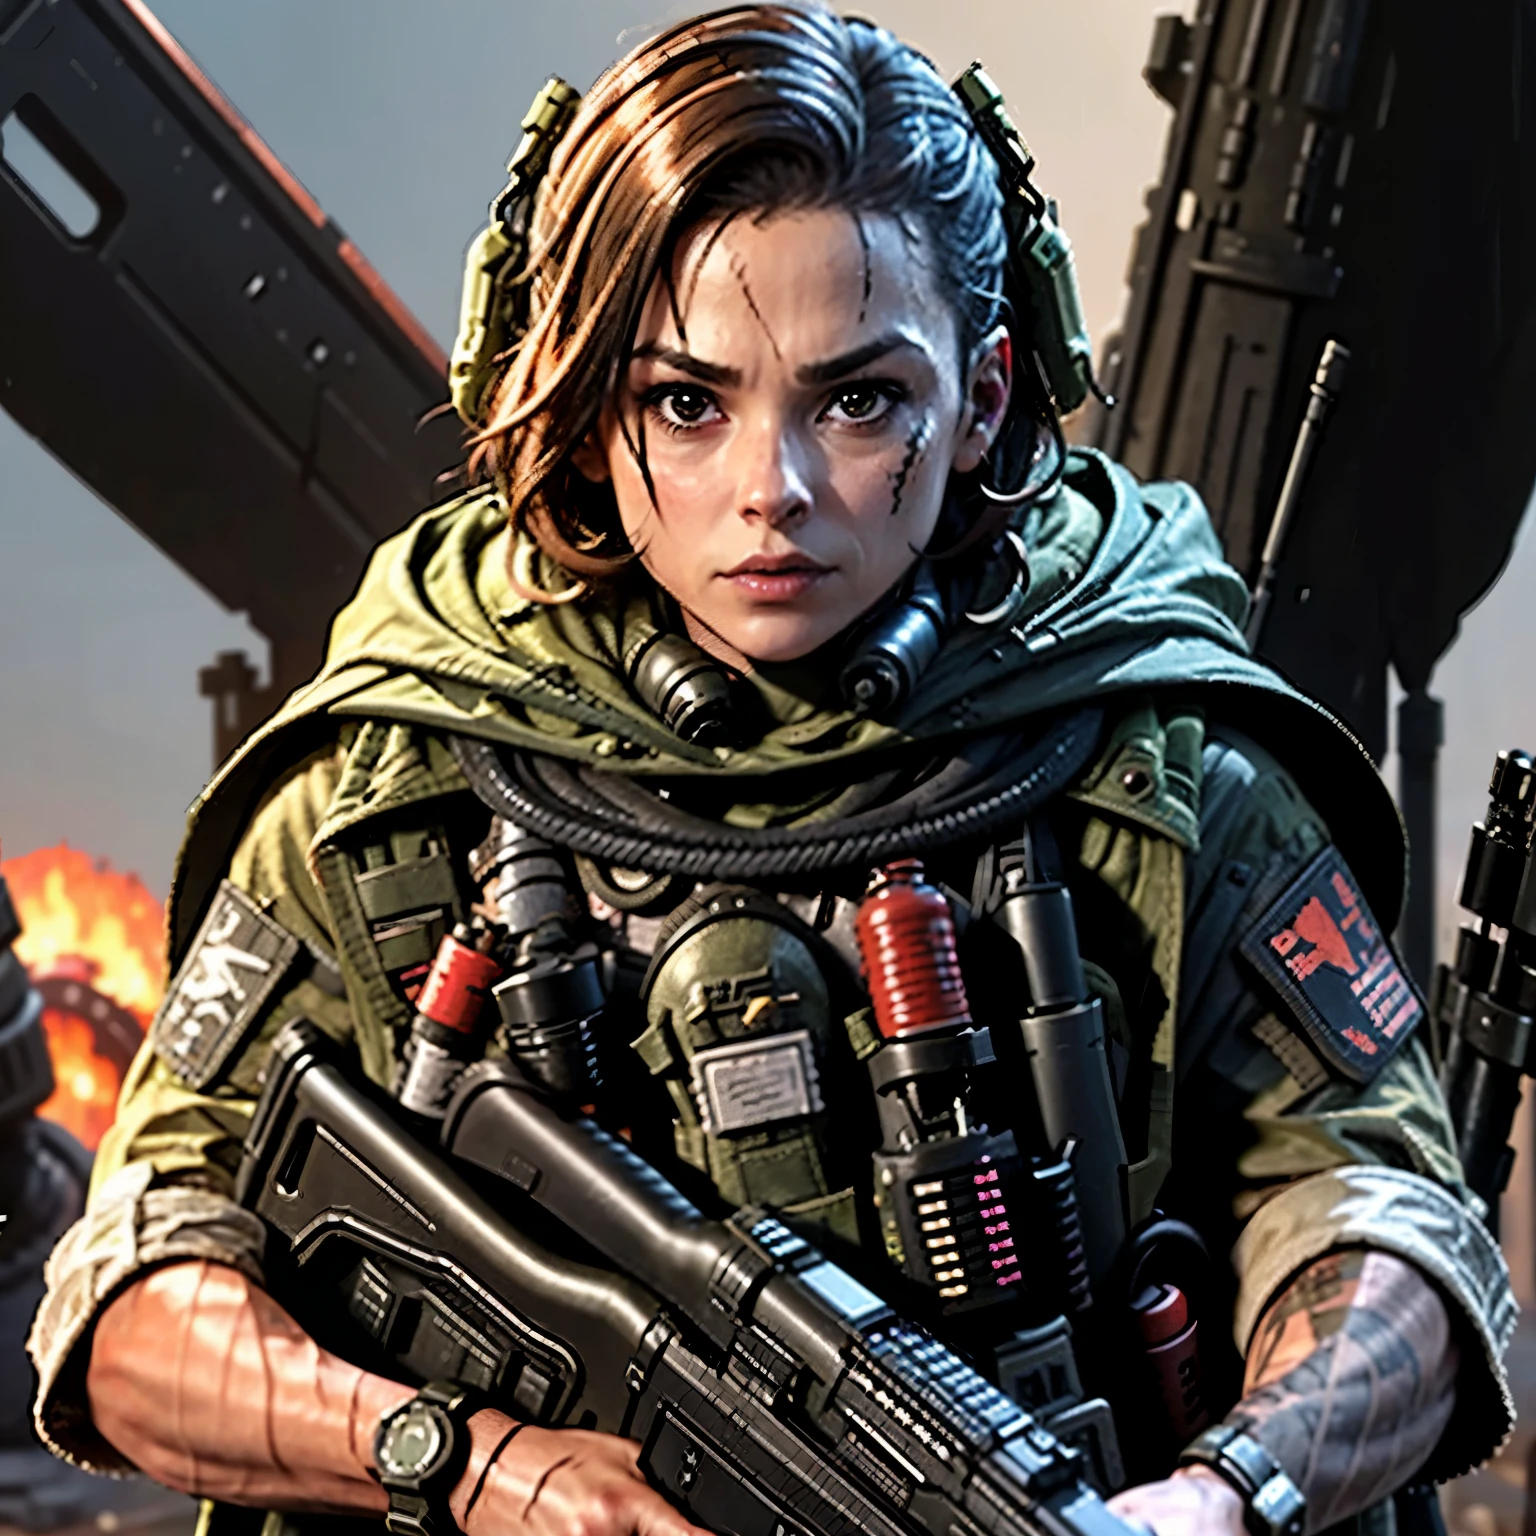 Character name in Call of Duty called イジー:

イジー, コール オブ デューティの世界における大胆かつ情熱的な人物, 彼女のユニークな性格は典型的な軍隊のイメージを覆す. アサルトライフルと機転で武装, この粘り強い性格はどんな任務にも備えている. 彼女の短い, 尖った髪は彼女の穏やかで集中した態度と対照的である, 彼女は戦場で忘れられない存在となった. 彼女が直面する厳しい状況にもかかわらず, イジー maintains a cool composure, 戦略的才能を頼りに敵を出し抜く. 彼女の心に決意と魂の炎を持って, 彼女はどのチームにとっても貴重な存在だ.